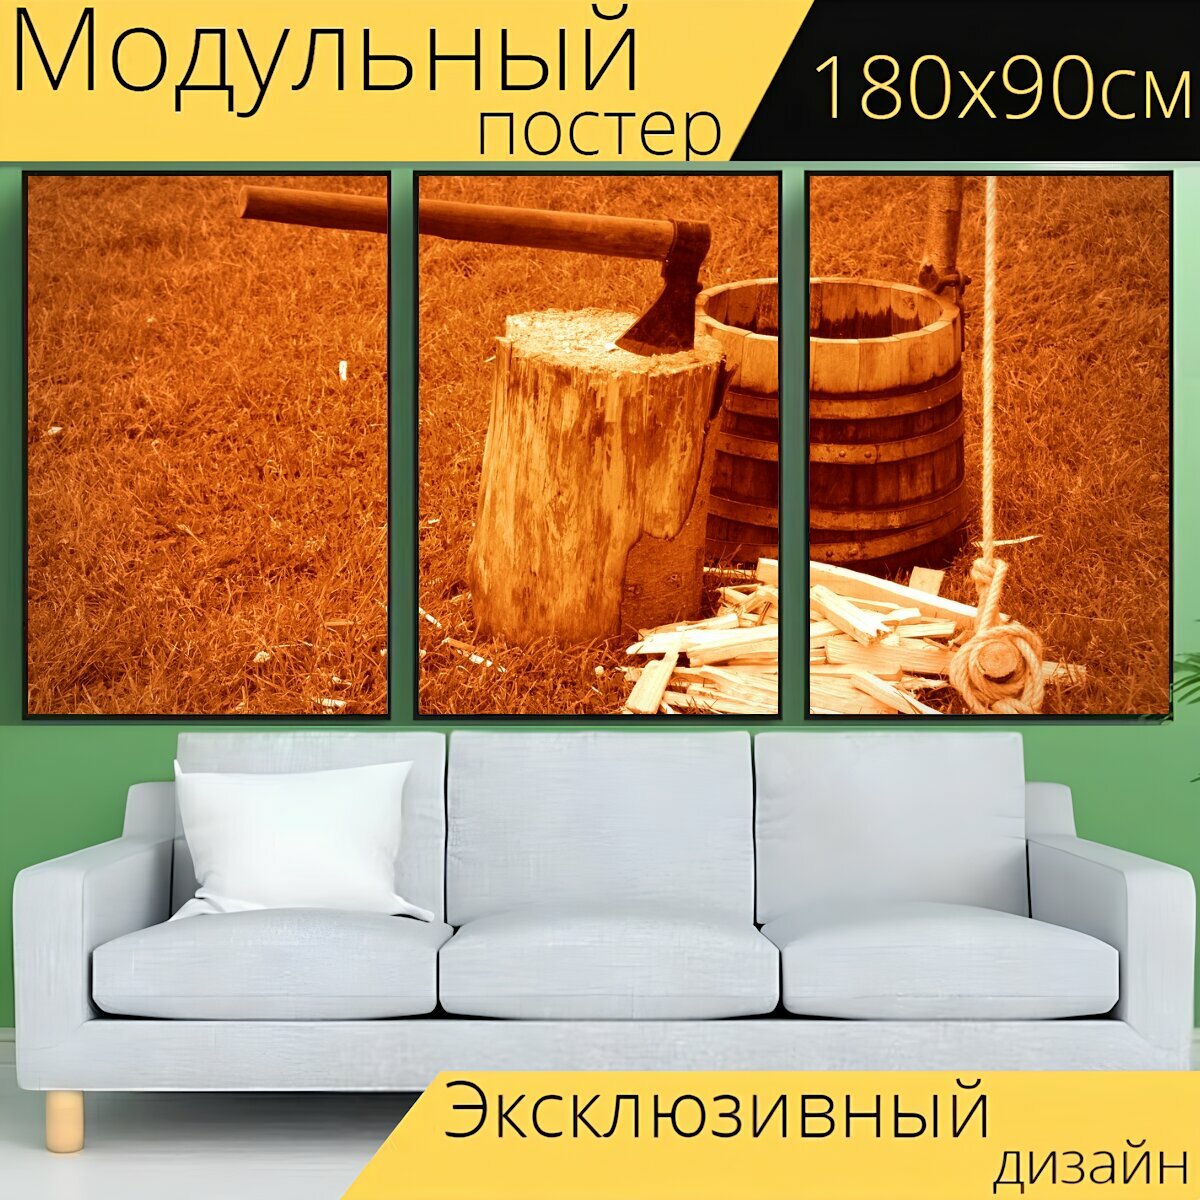 Модульный постер "Викинги, топор, древесина" 180 x 90 см. для интерьера